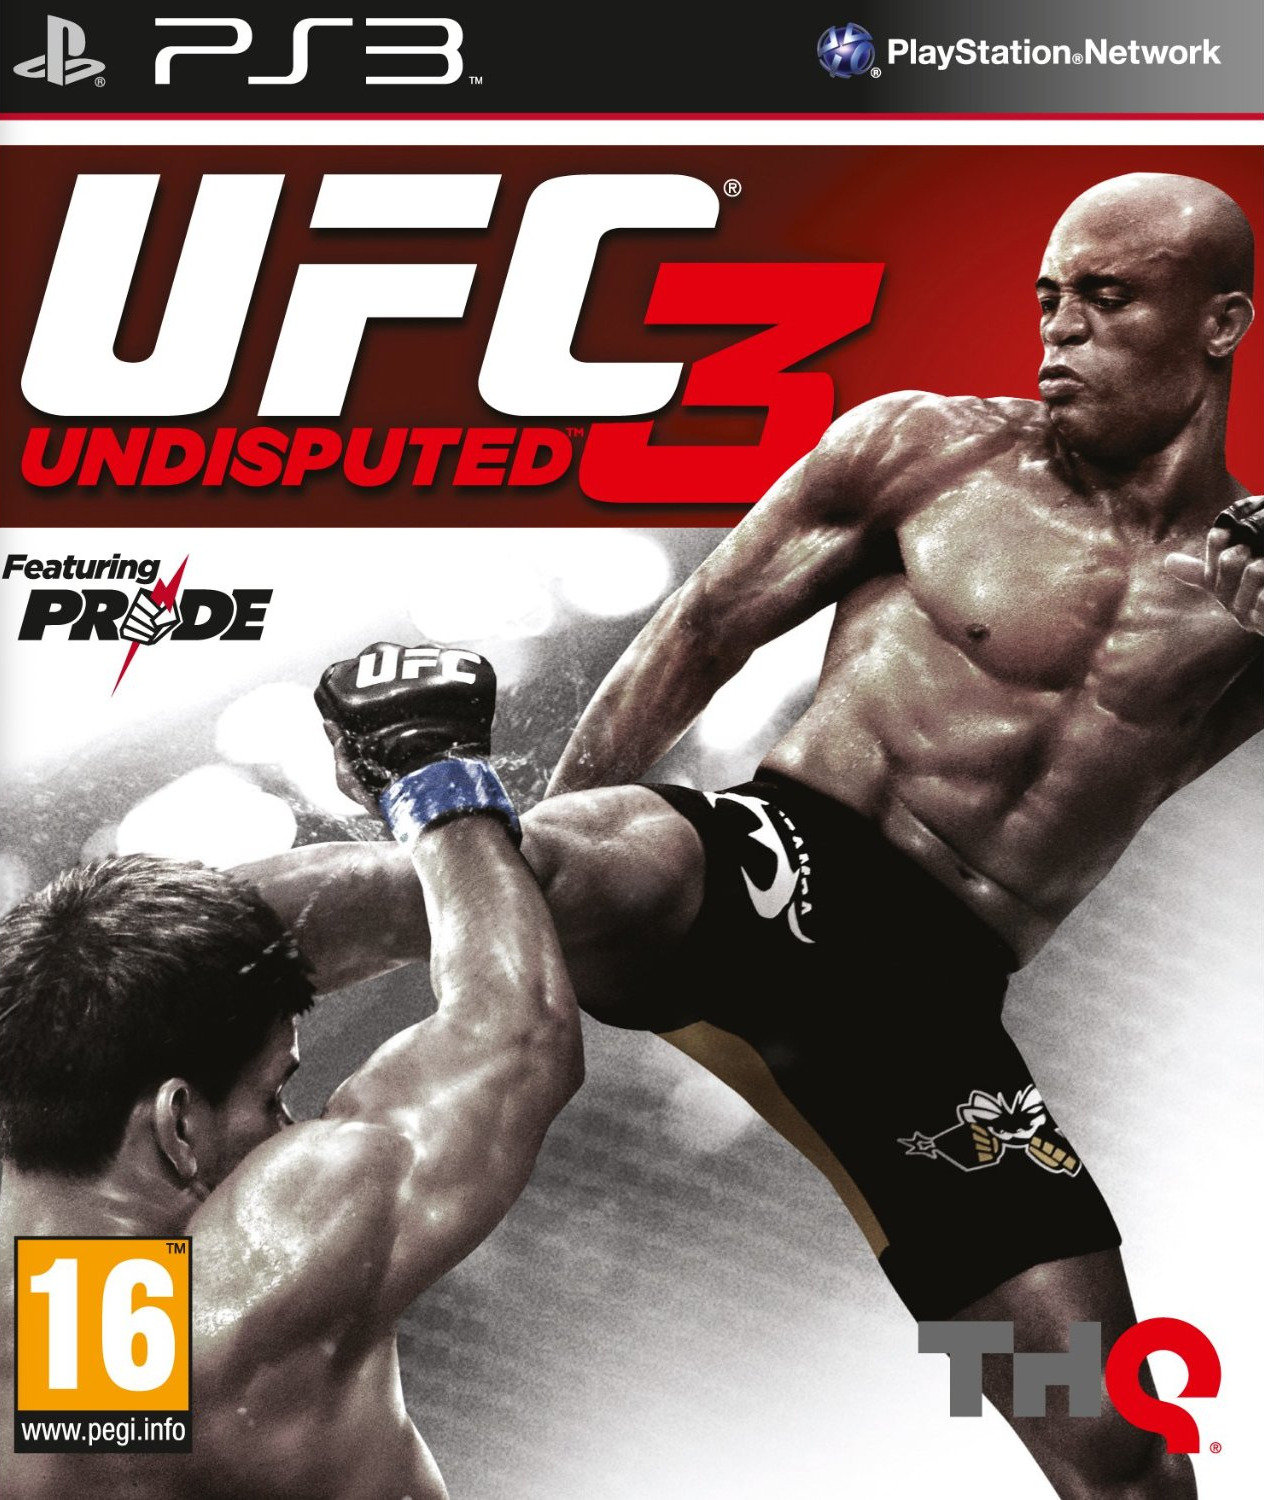 jaquette du jeu vidéo UFC Undisputed 3